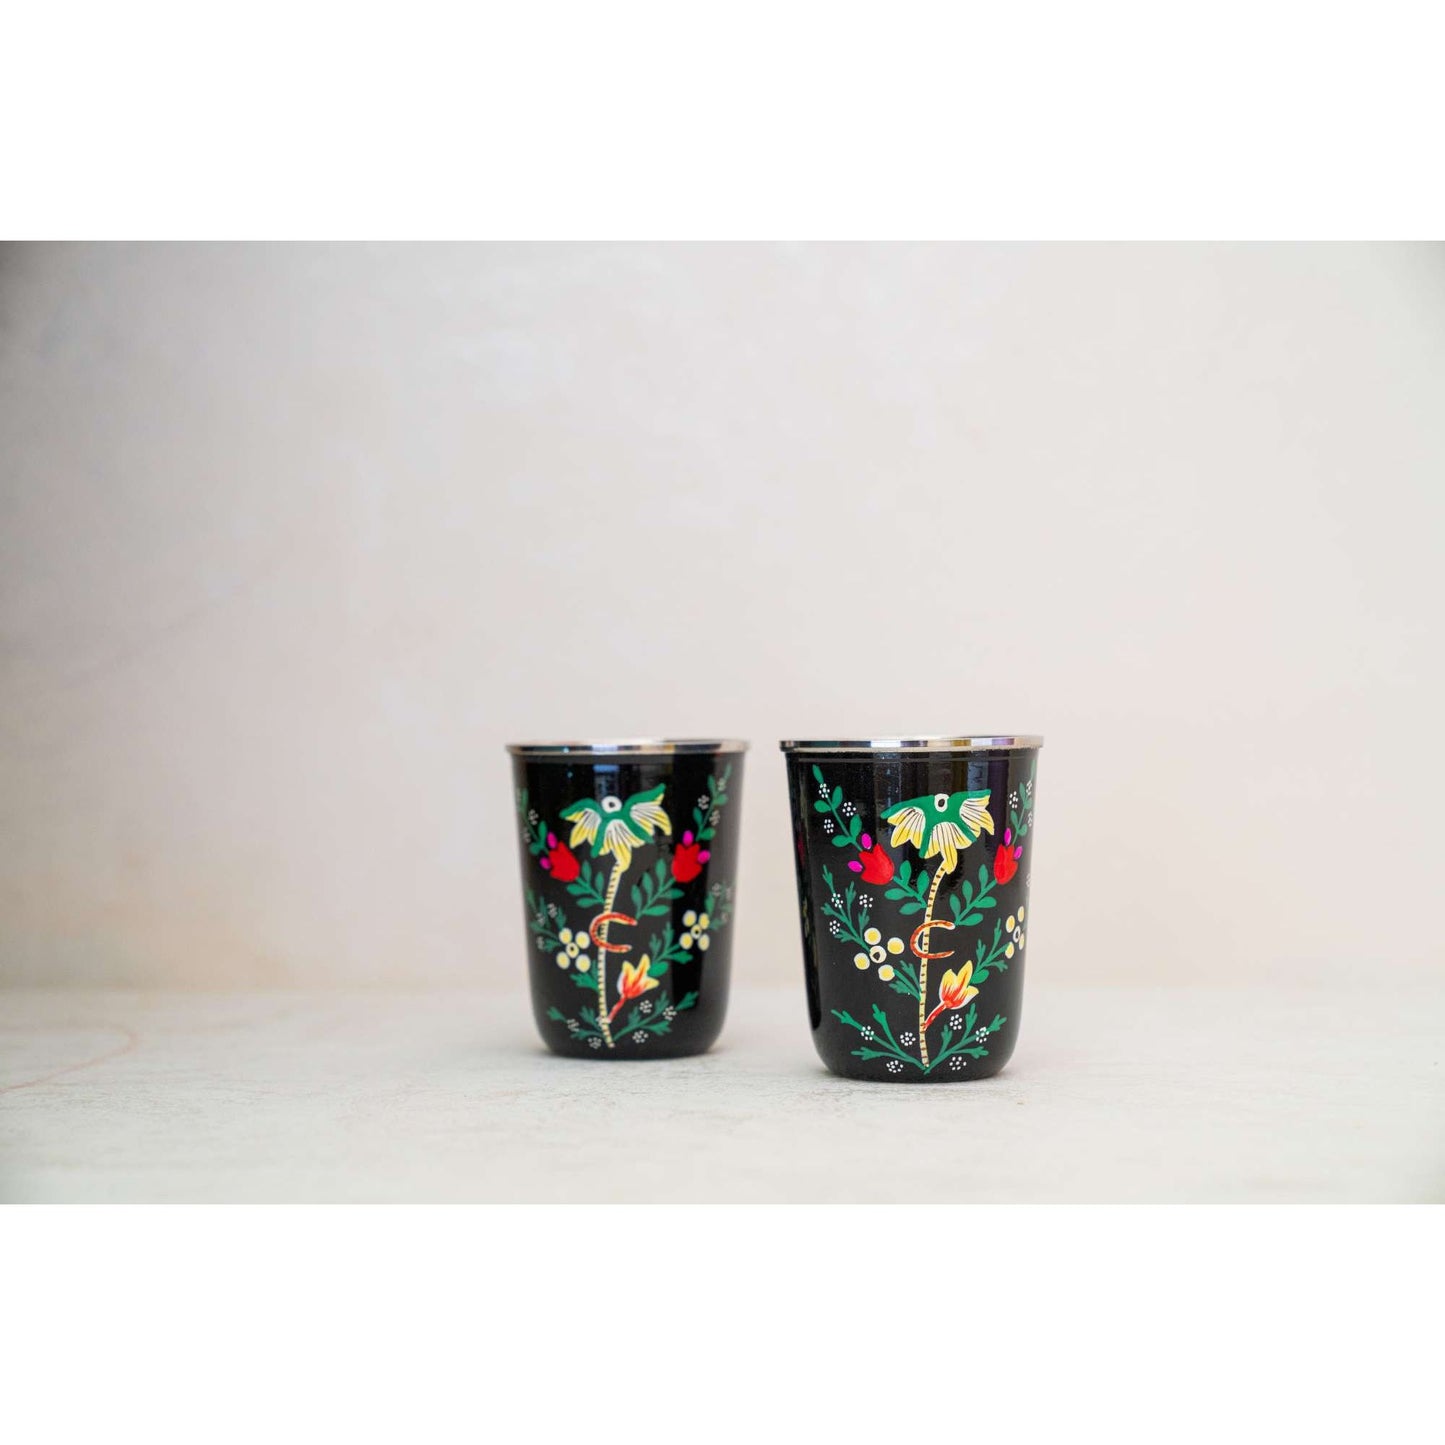 Black Floral Kashmiri Handpainted Stainless Steel Glasses - Pair of 2